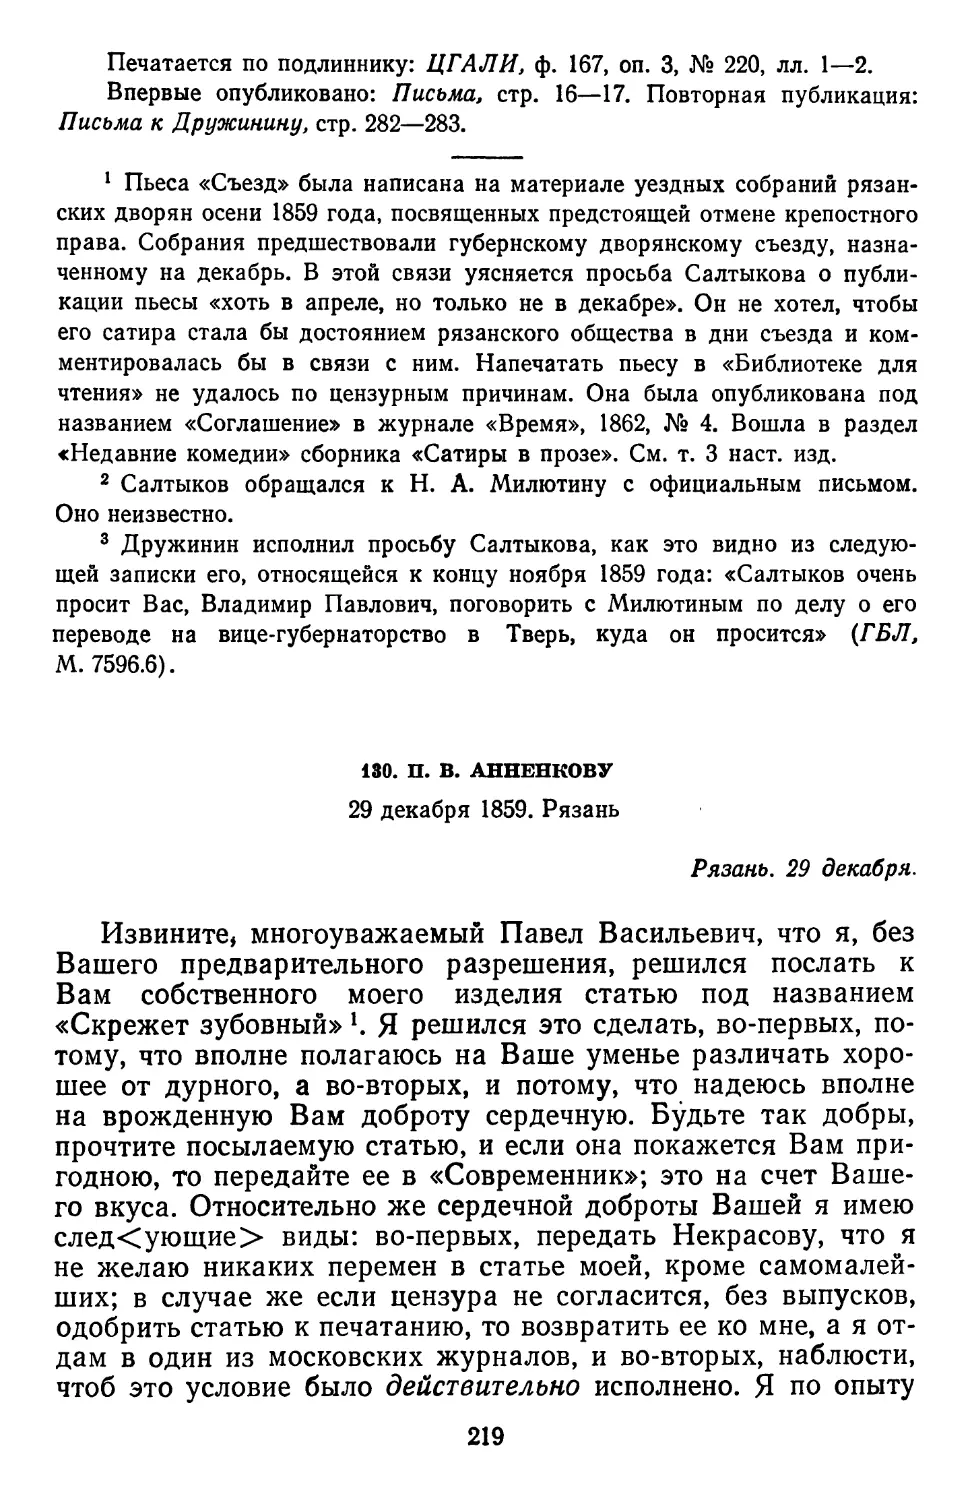 130.П.В. Анненкову. 29 декабря 1859. Рязань